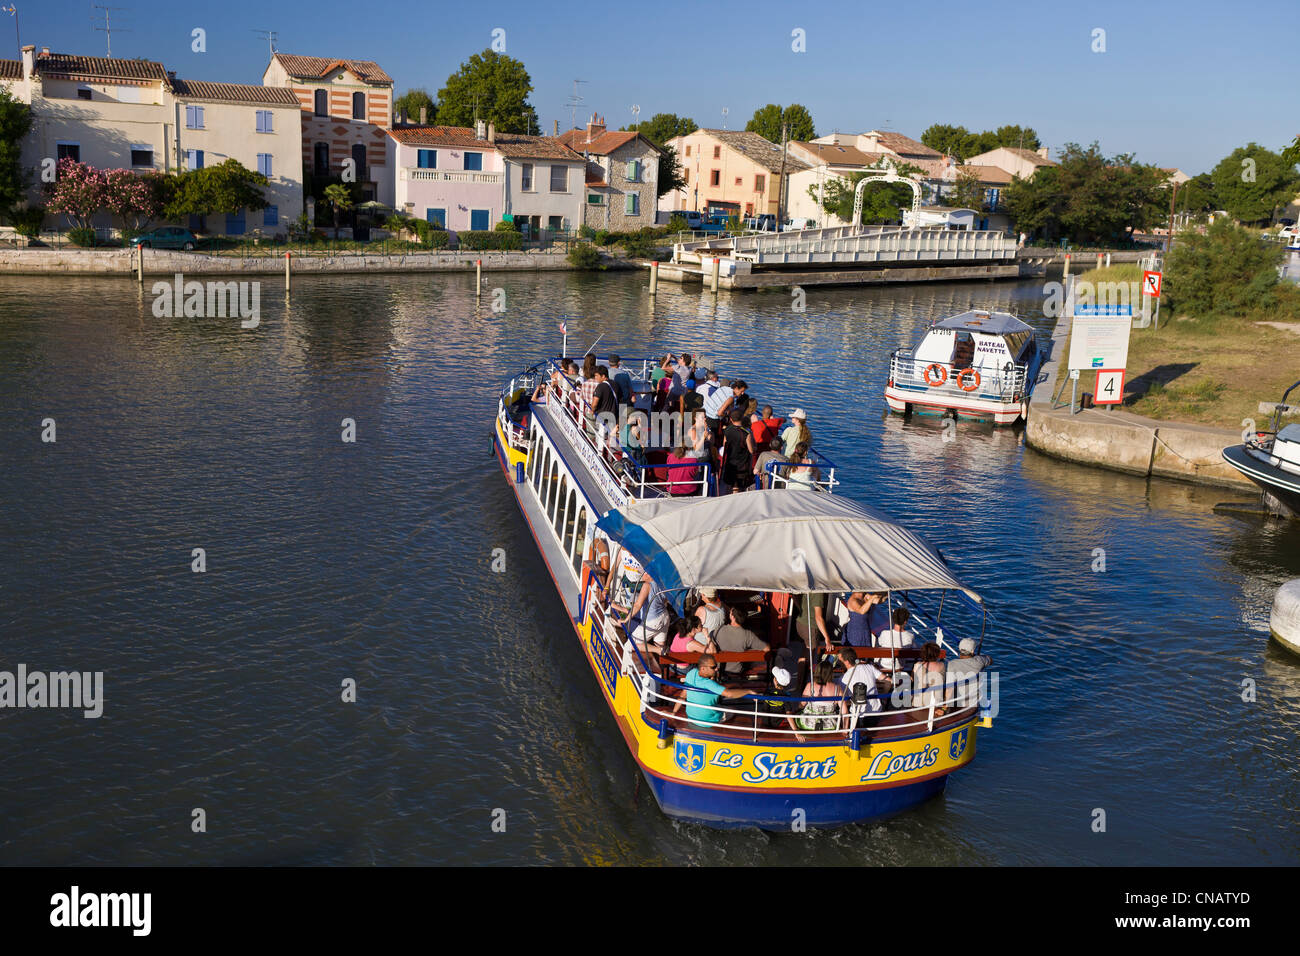 La France, Gard, Aigues Mortes, croisière sur le canal maritime Banque D'Images